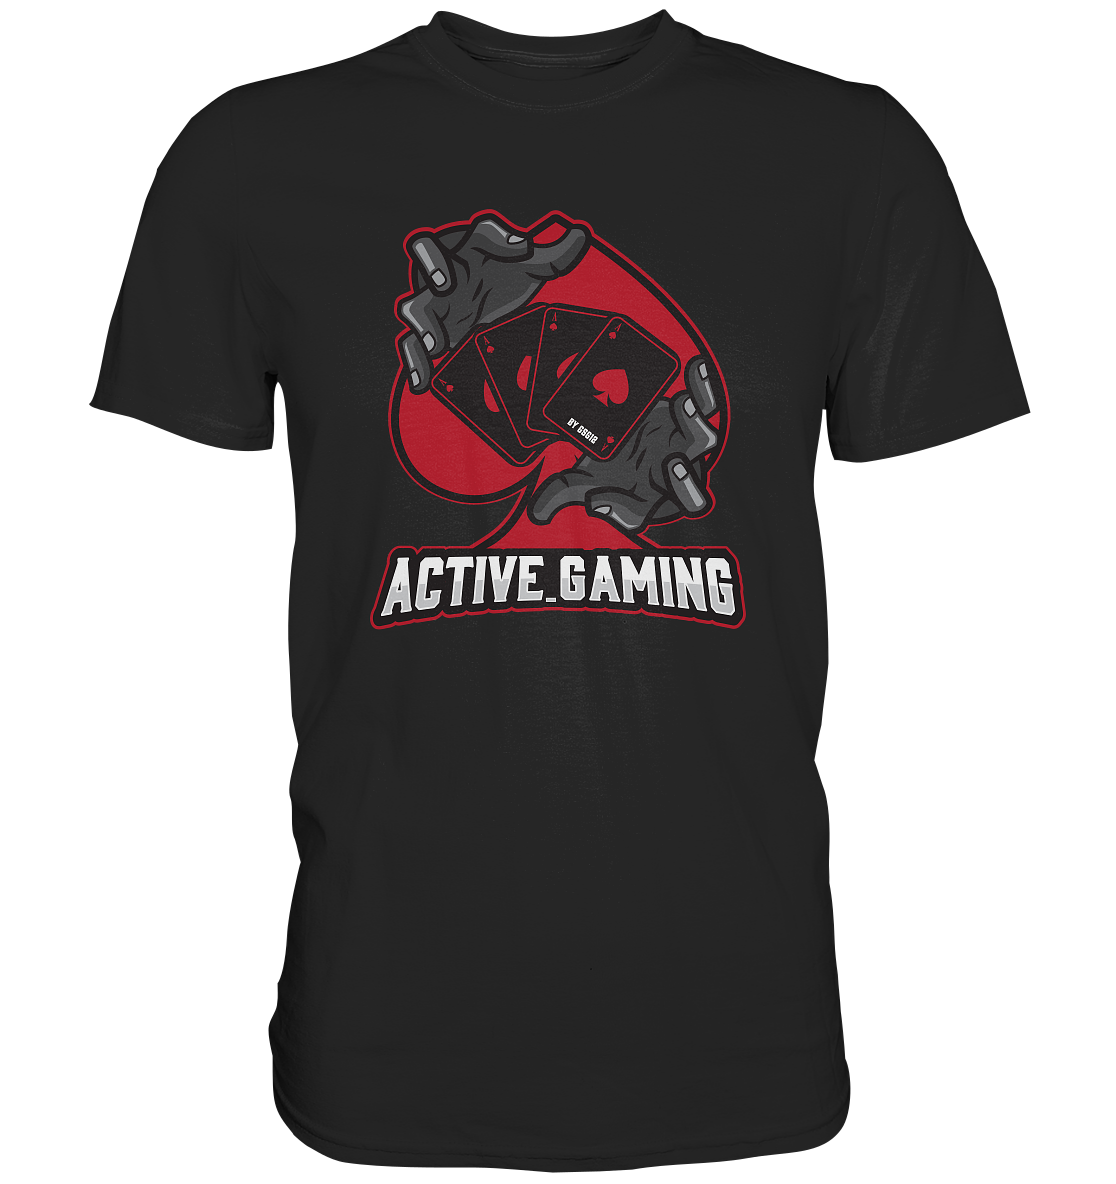 ACTIVE GAMING - Basic Shirt